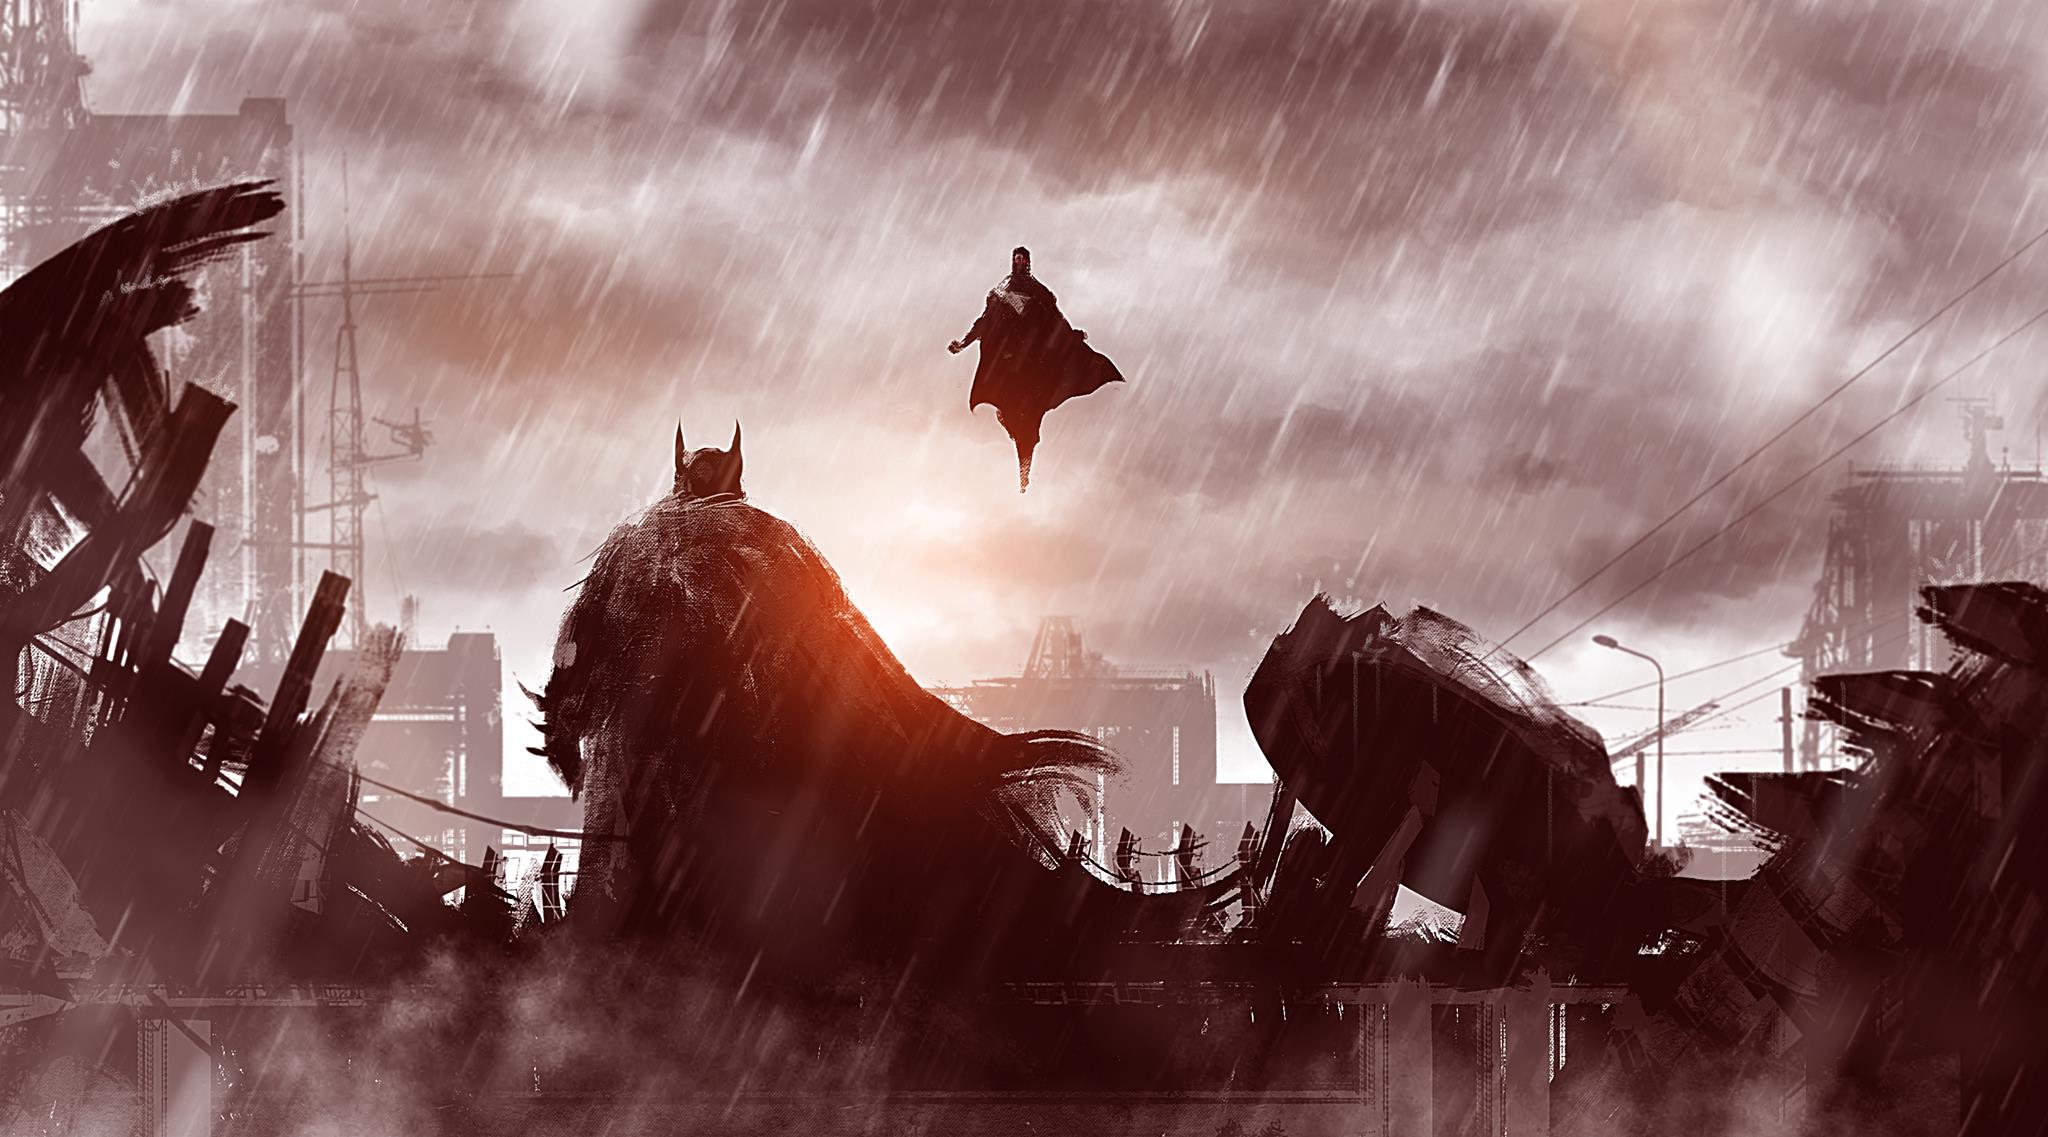 47+] Batman vs Superman HD Wallpapers - WallpaperSafari